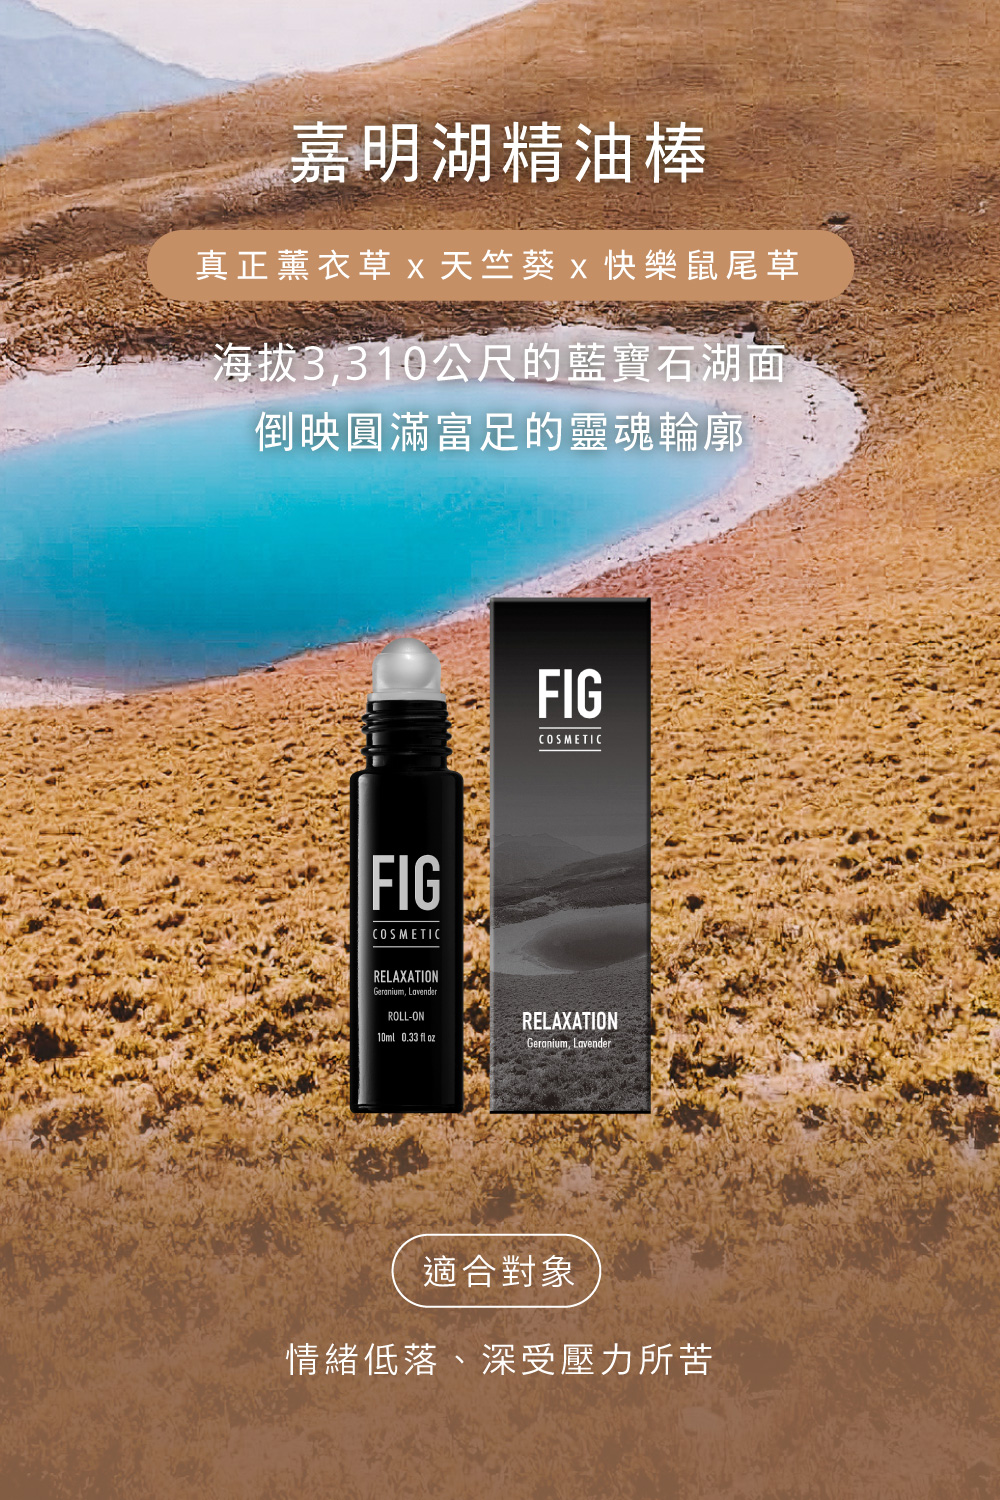 FIG嘉明湖百岳精油棒添加真正薰衣草精油、天竺葵精油、快樂鼠尾草精油，情緒低落、深受壓力所苦的人使用。